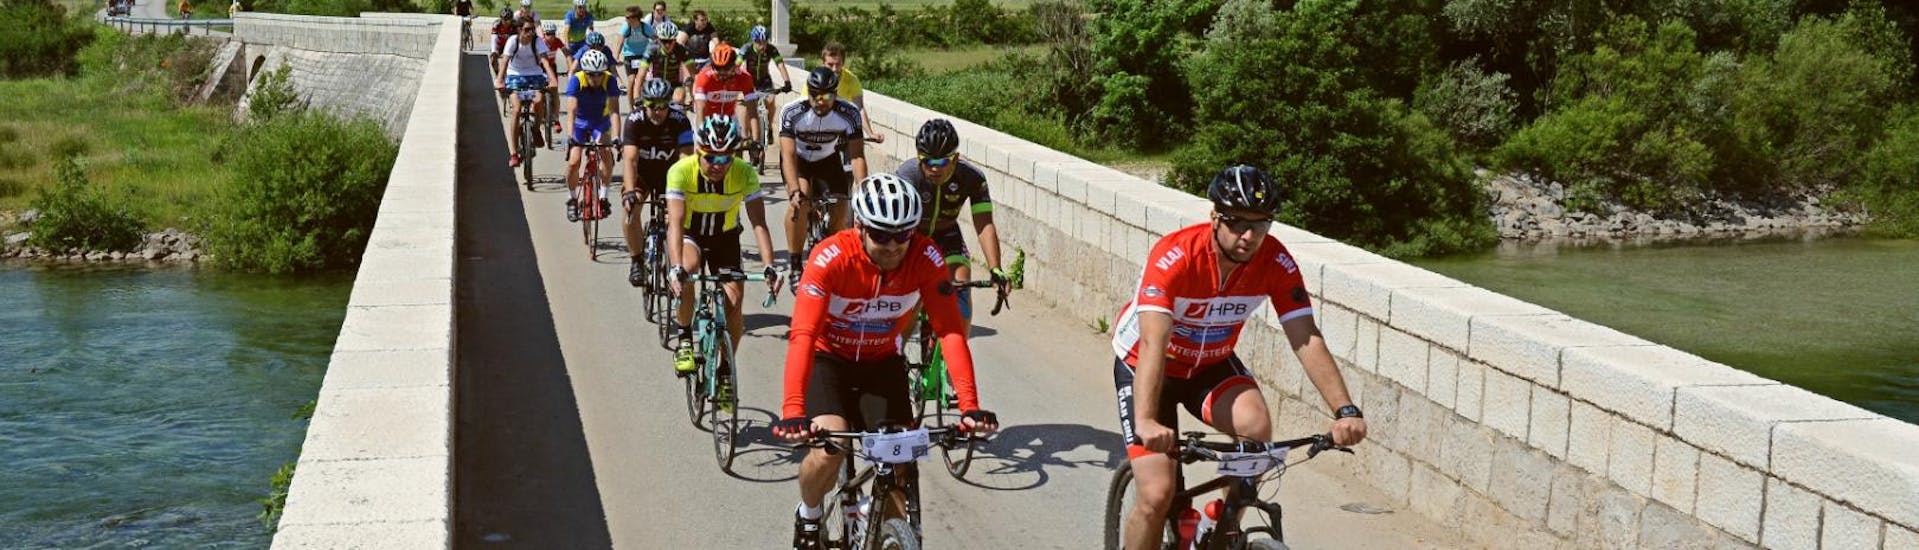 Pendant l'excursion en vélo loisir avec transfert depuis Split organisée par l'hôtel Alkar, un groupe de cyclistes parcourt la Dalmatie.